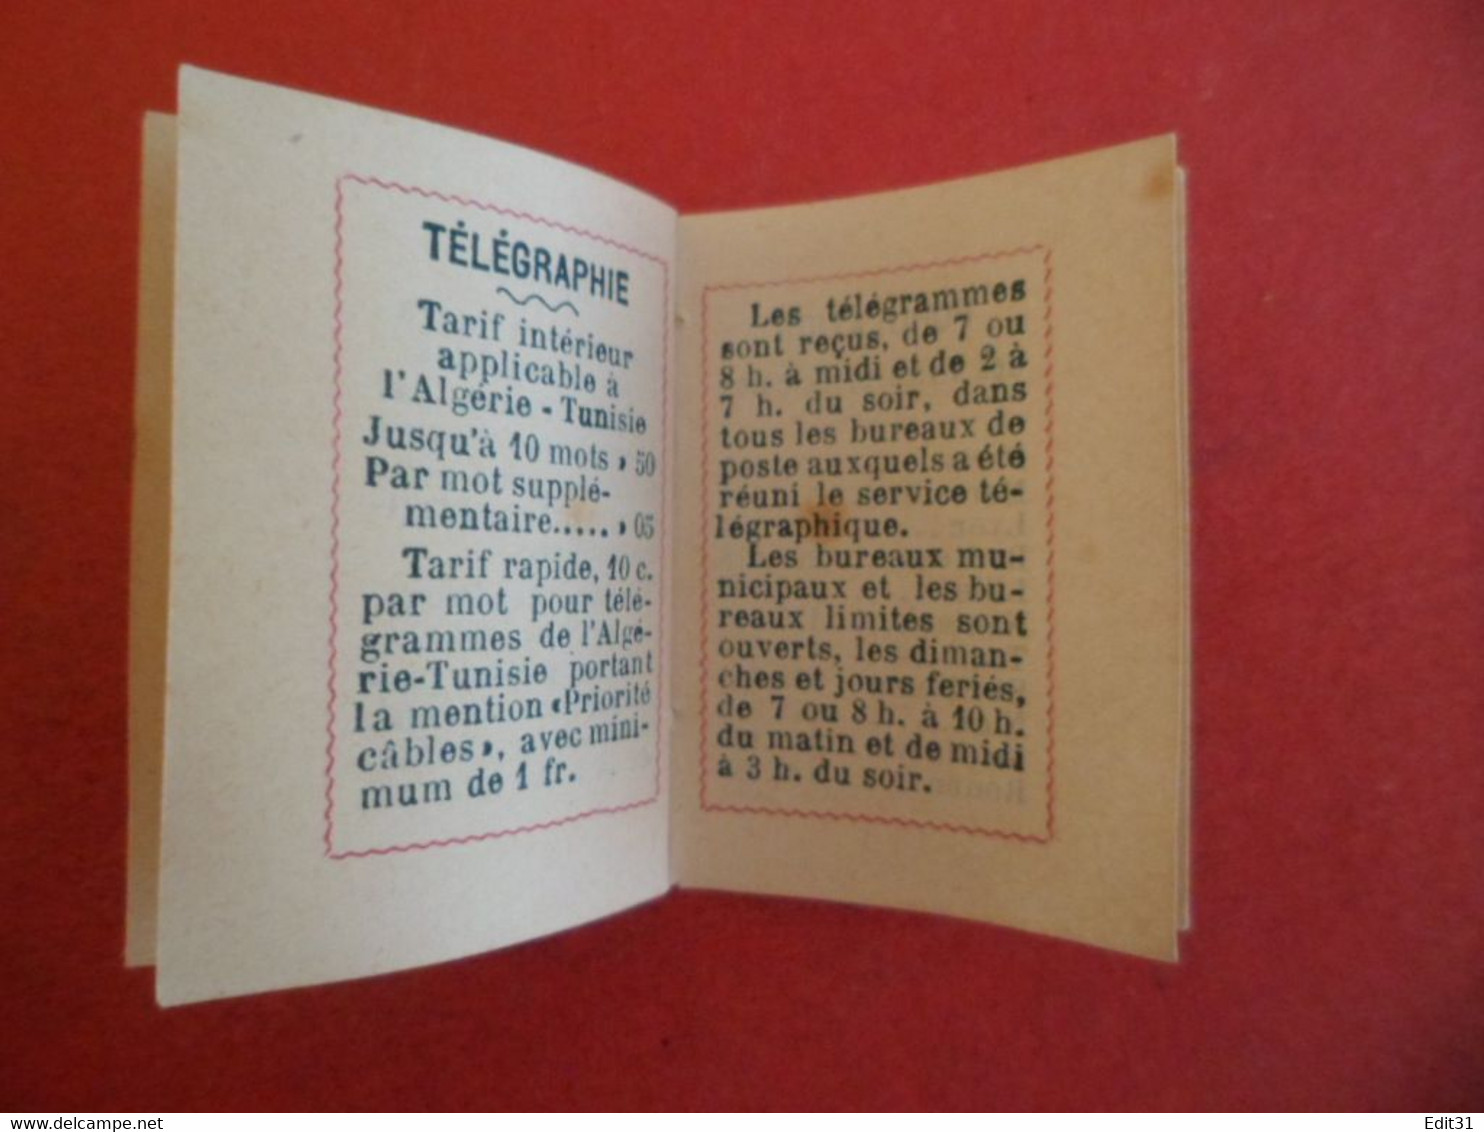 Calendrier petit Almanach 1914 - Librairie DEVERS TOULOUSE Rte St. Rome  - Missels livres - fleurs Bleuet